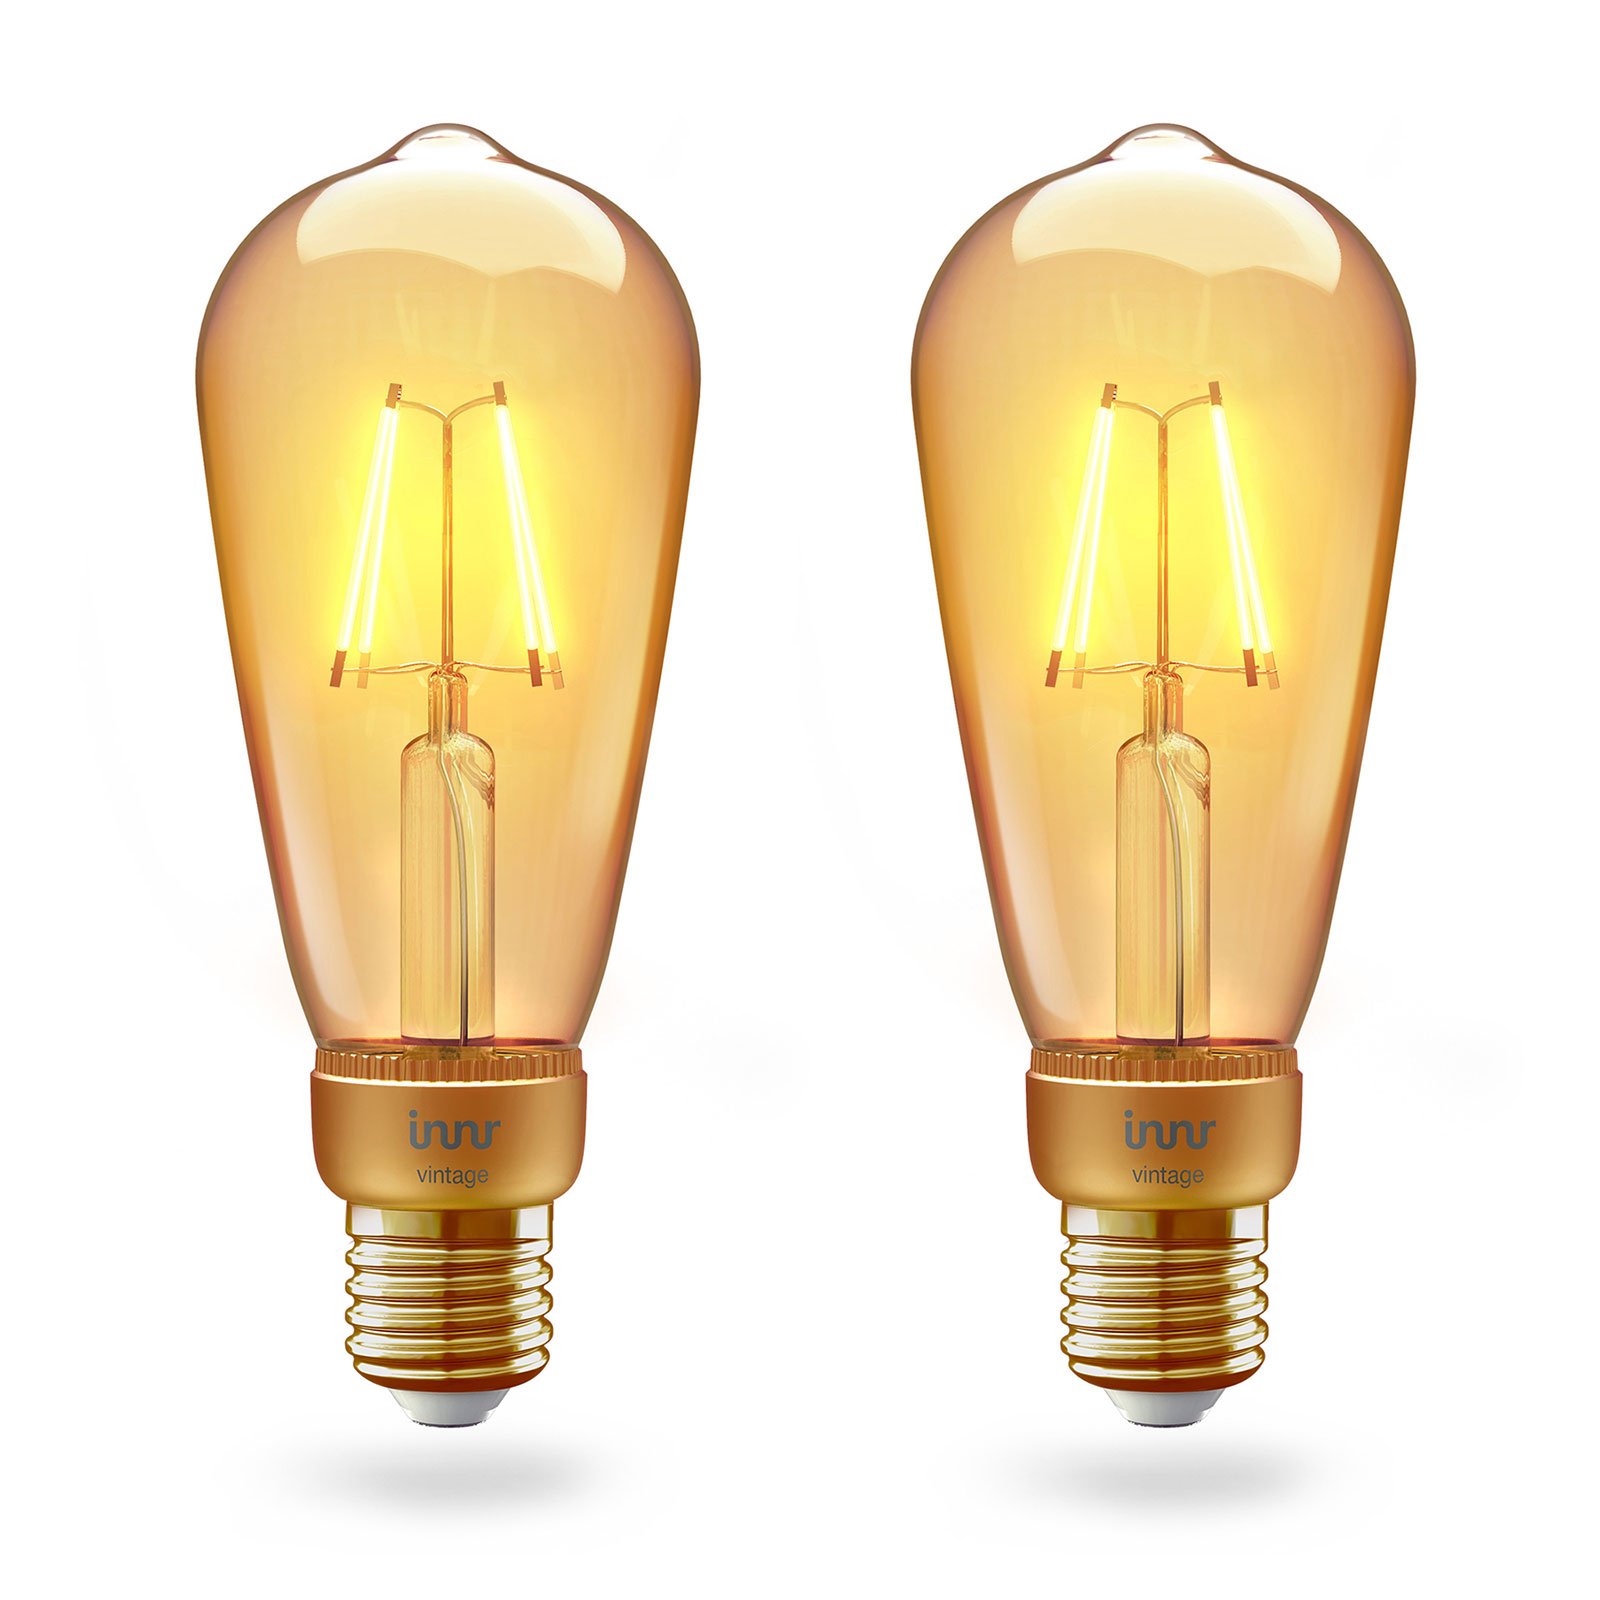 Innr LED lamp E27 filament Edison 2200K 4,2W 2/set